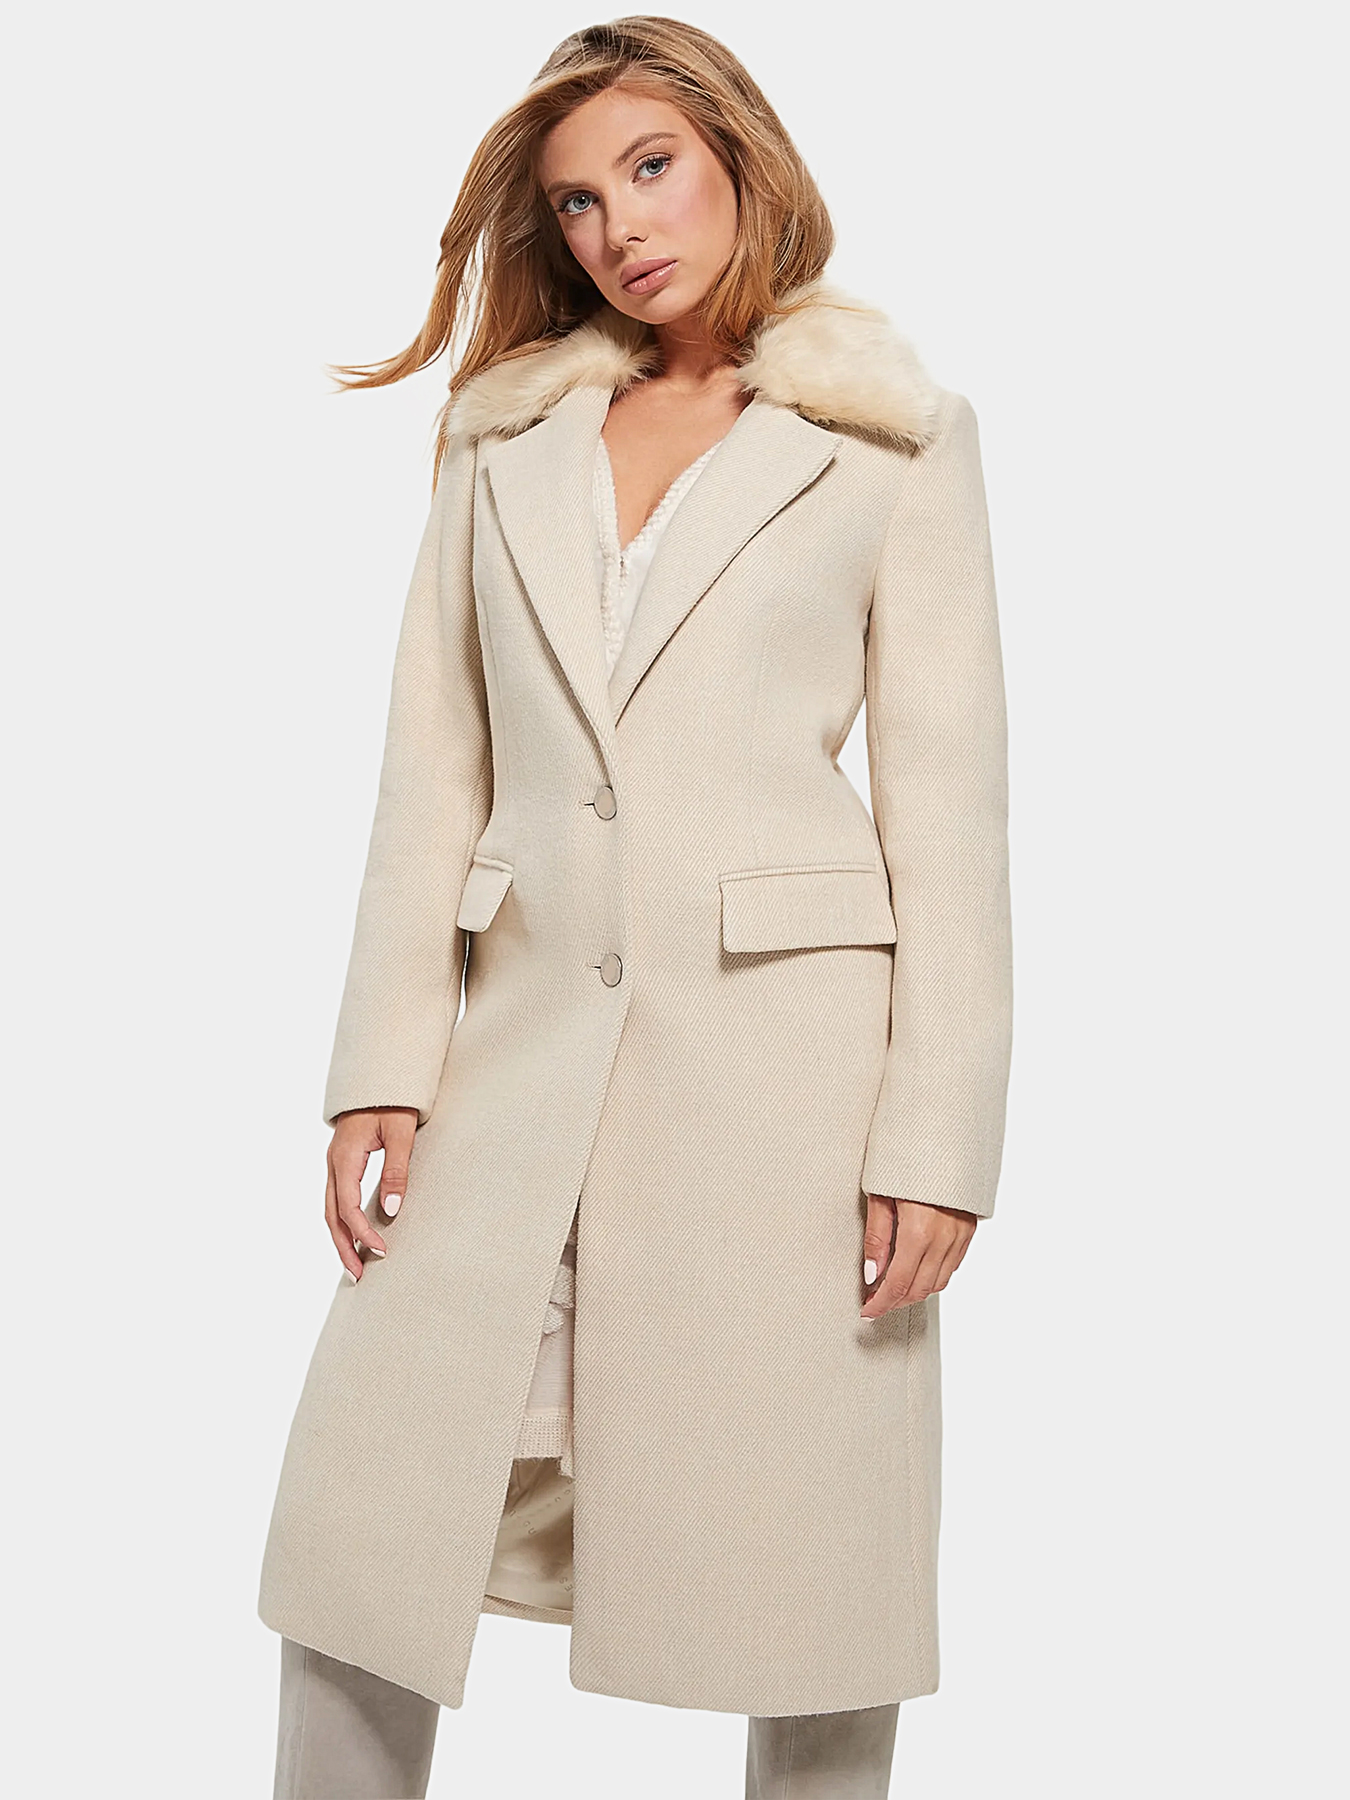 LAURENCE coat in light brown brand GUESS — Globalbrandsstore.com/en